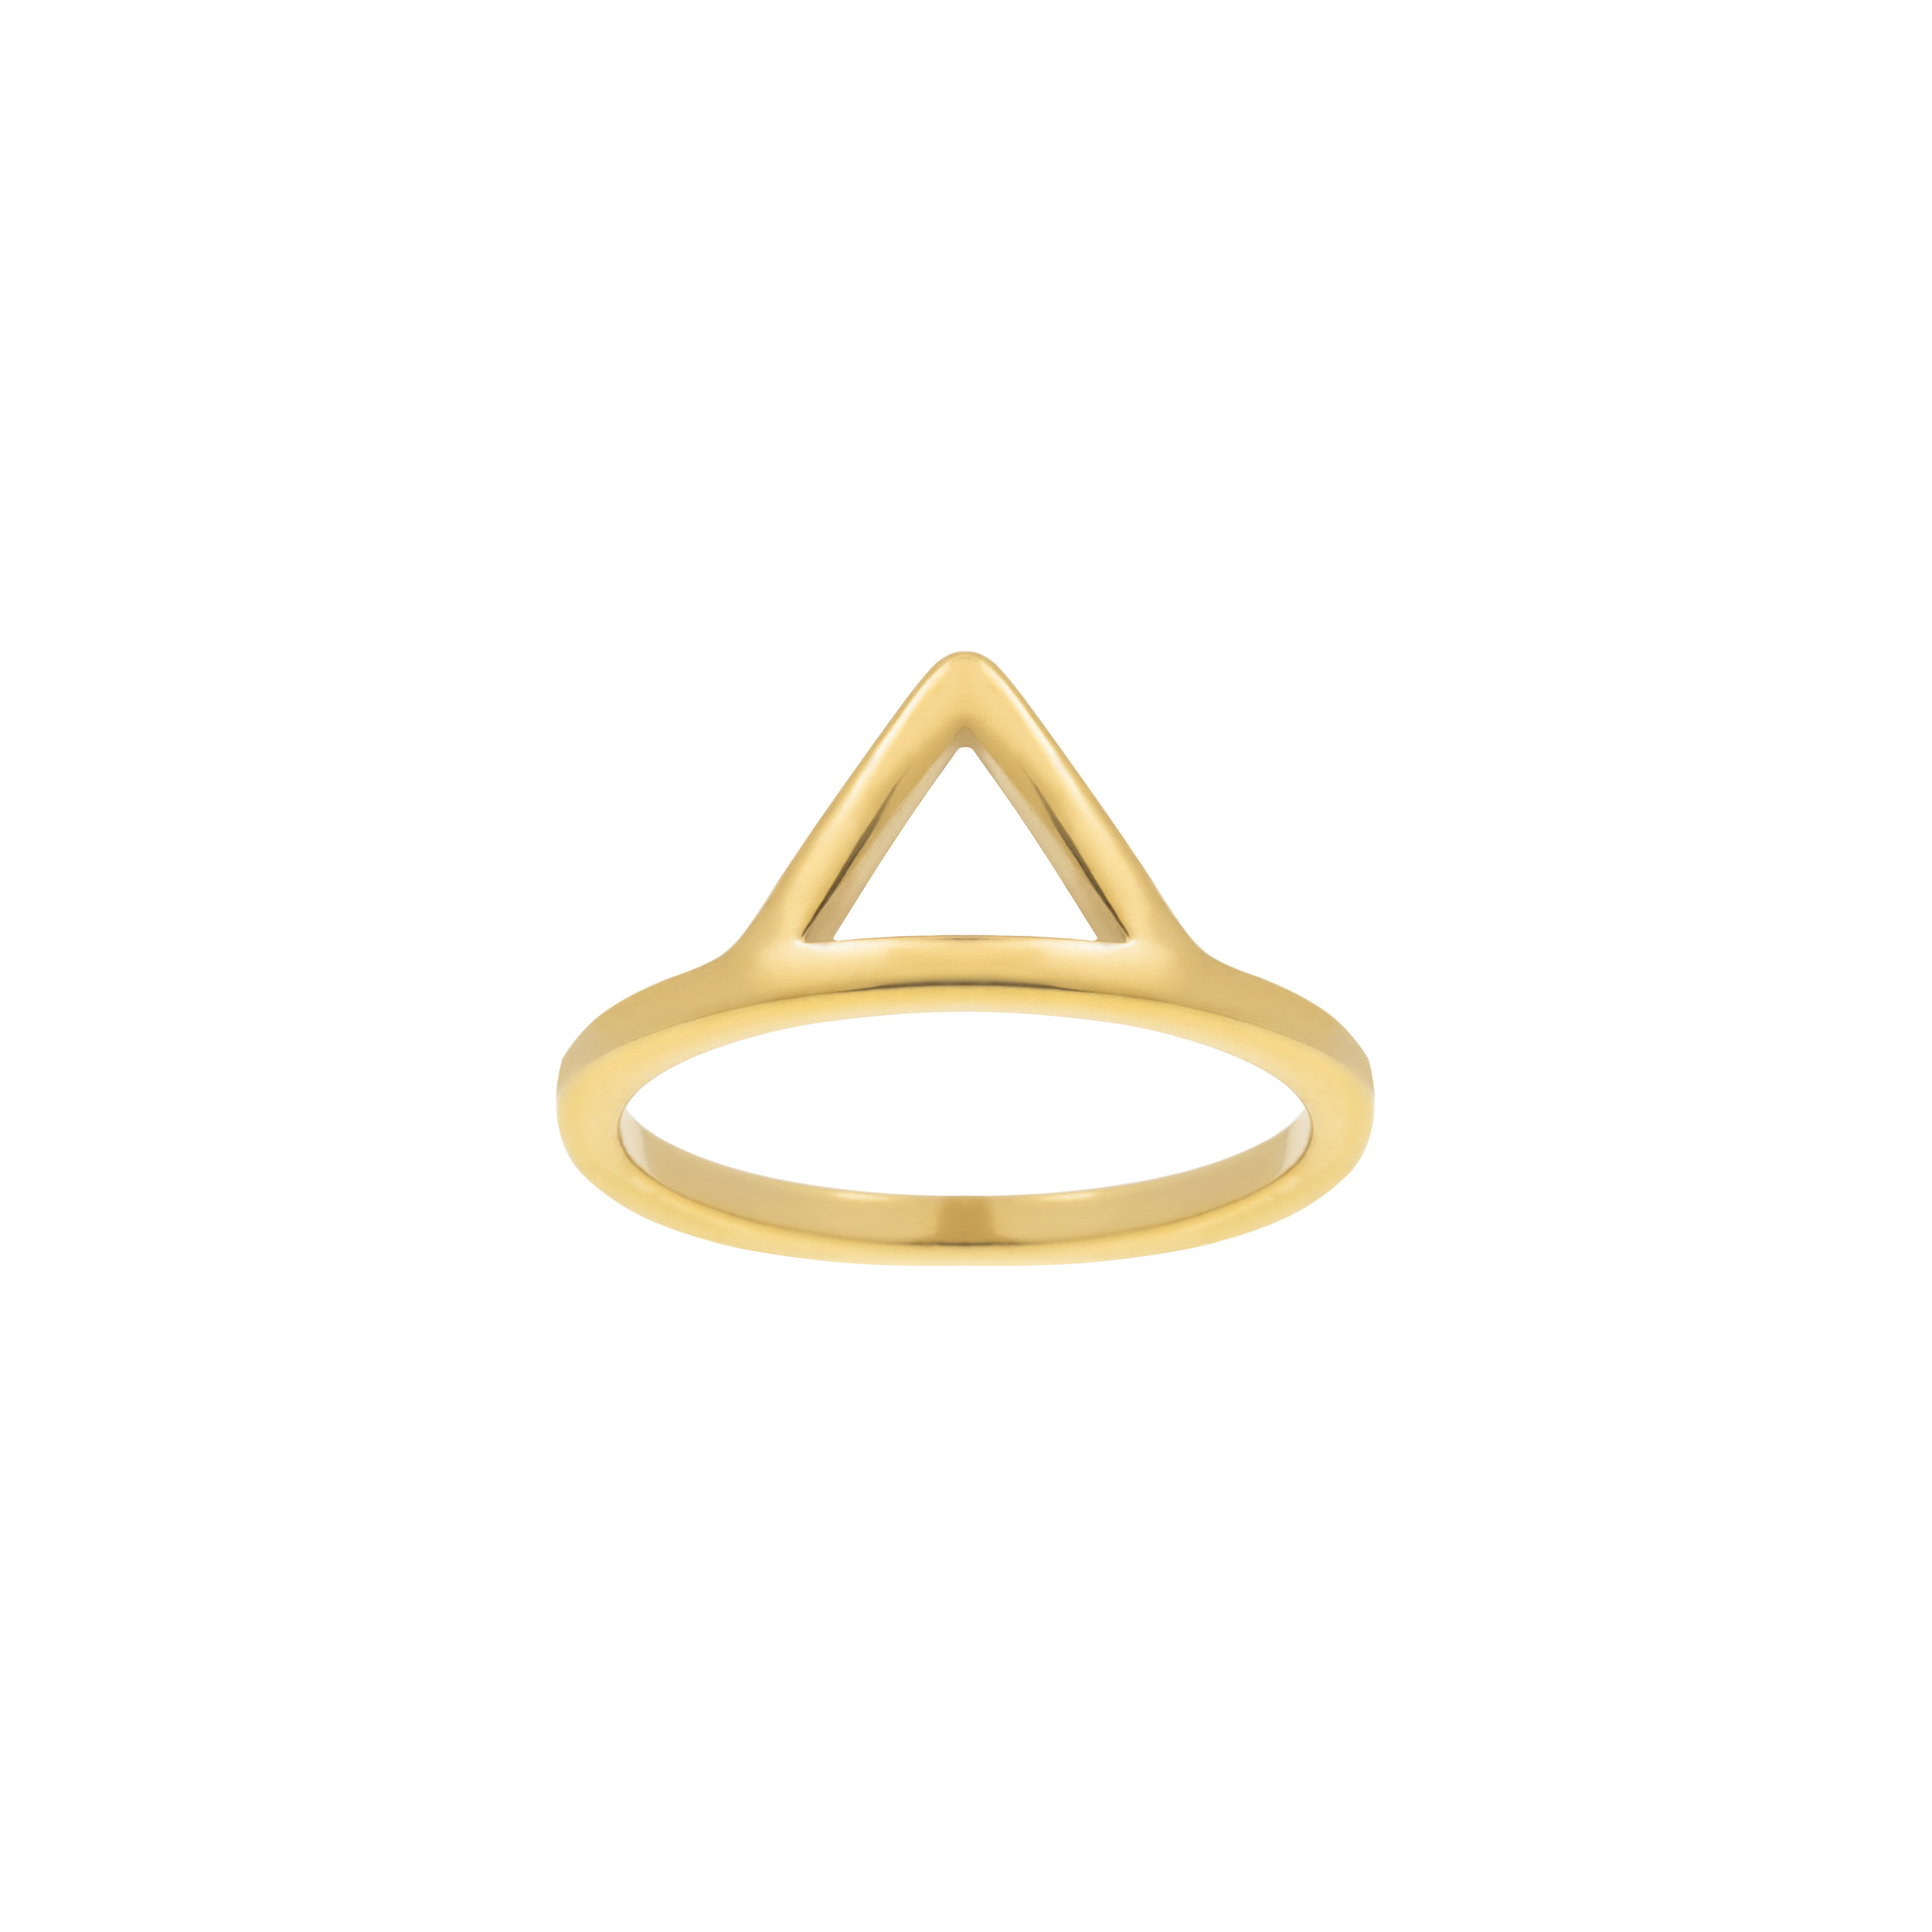 Базовое геометричное кольцо